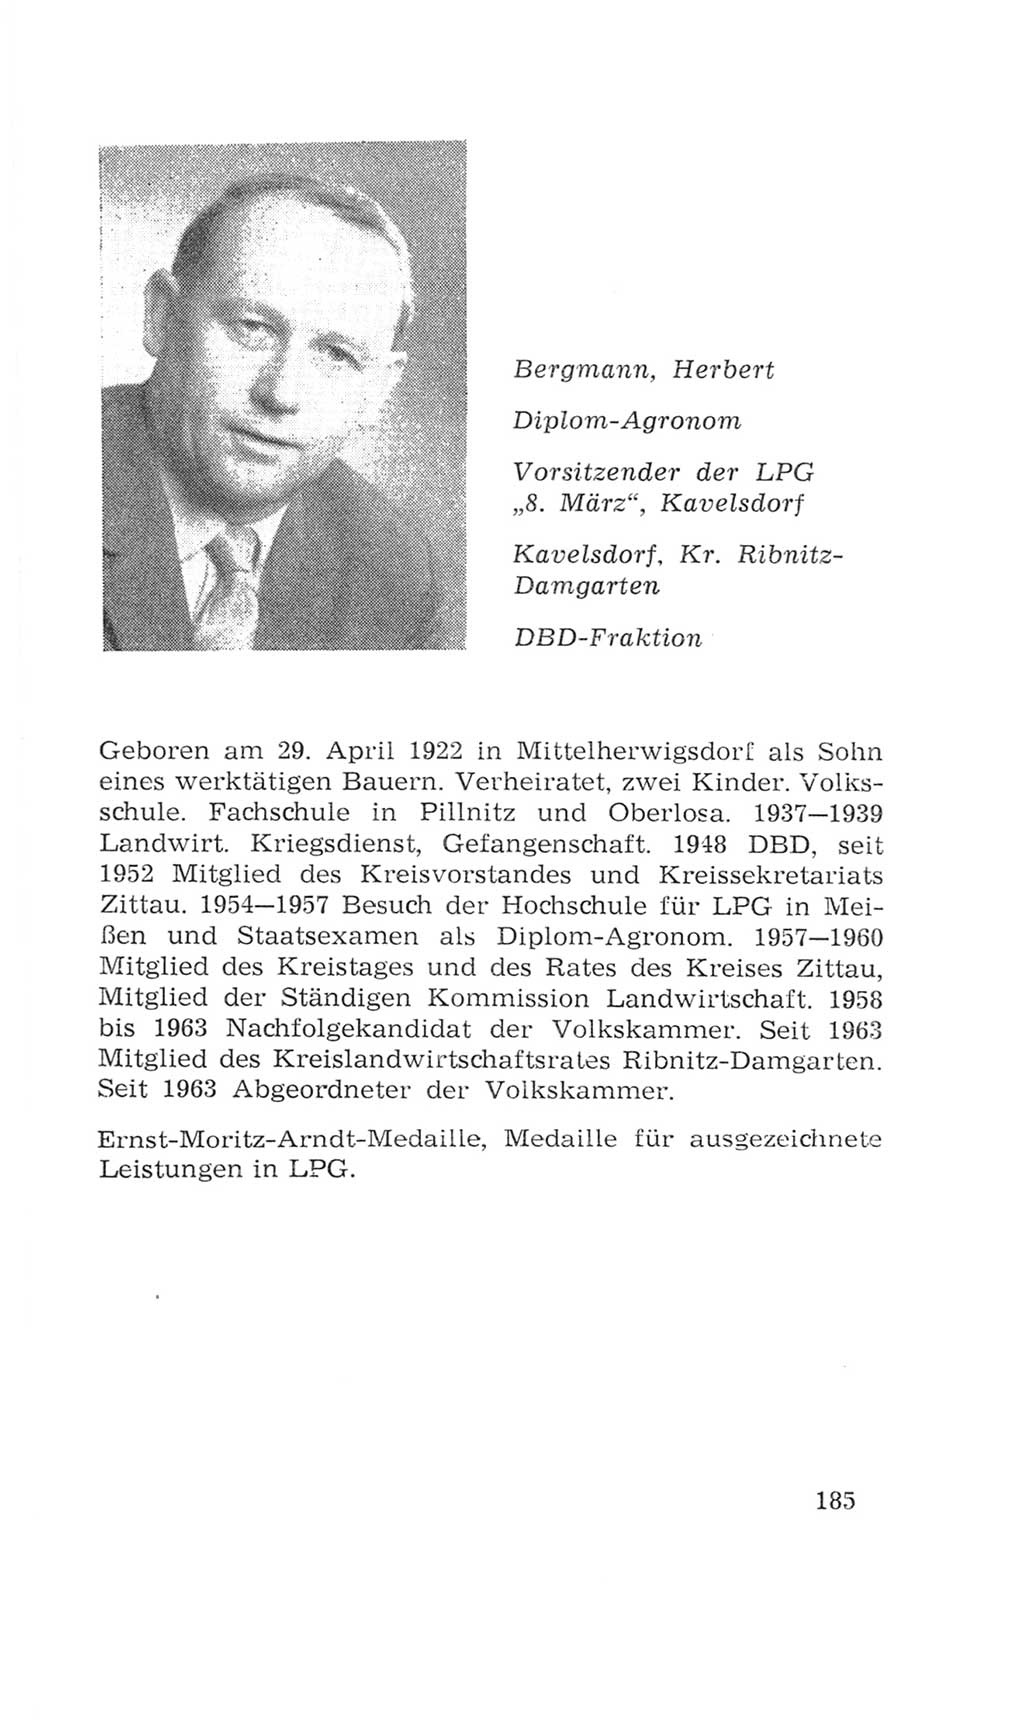 Volkskammer (VK) der Deutschen Demokratischen Republik (DDR), 4. Wahlperiode 1963-1967, Seite 185 (VK. DDR 4. WP. 1963-1967, S. 185)